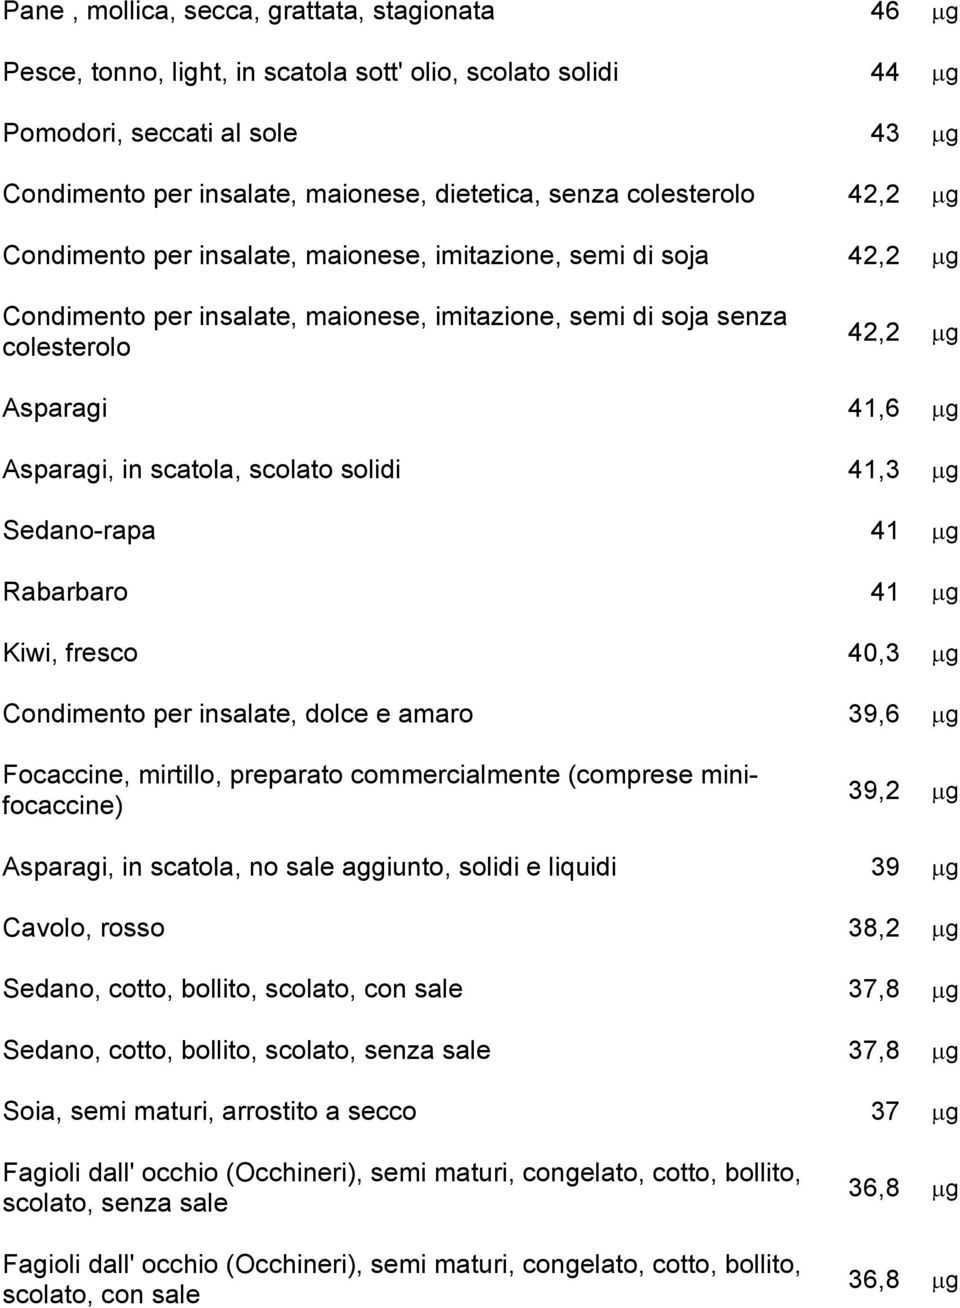 Asparagi, in scatola, scolato solidi 41,3 mg Sedano-rapa 41 mg Rabarbaro 41 mg Kiwi, fresco 40,3 mg Condimento per insalate, dolce e amaro 39,6 mg Focaccine, mirtillo, preparato commercialmente